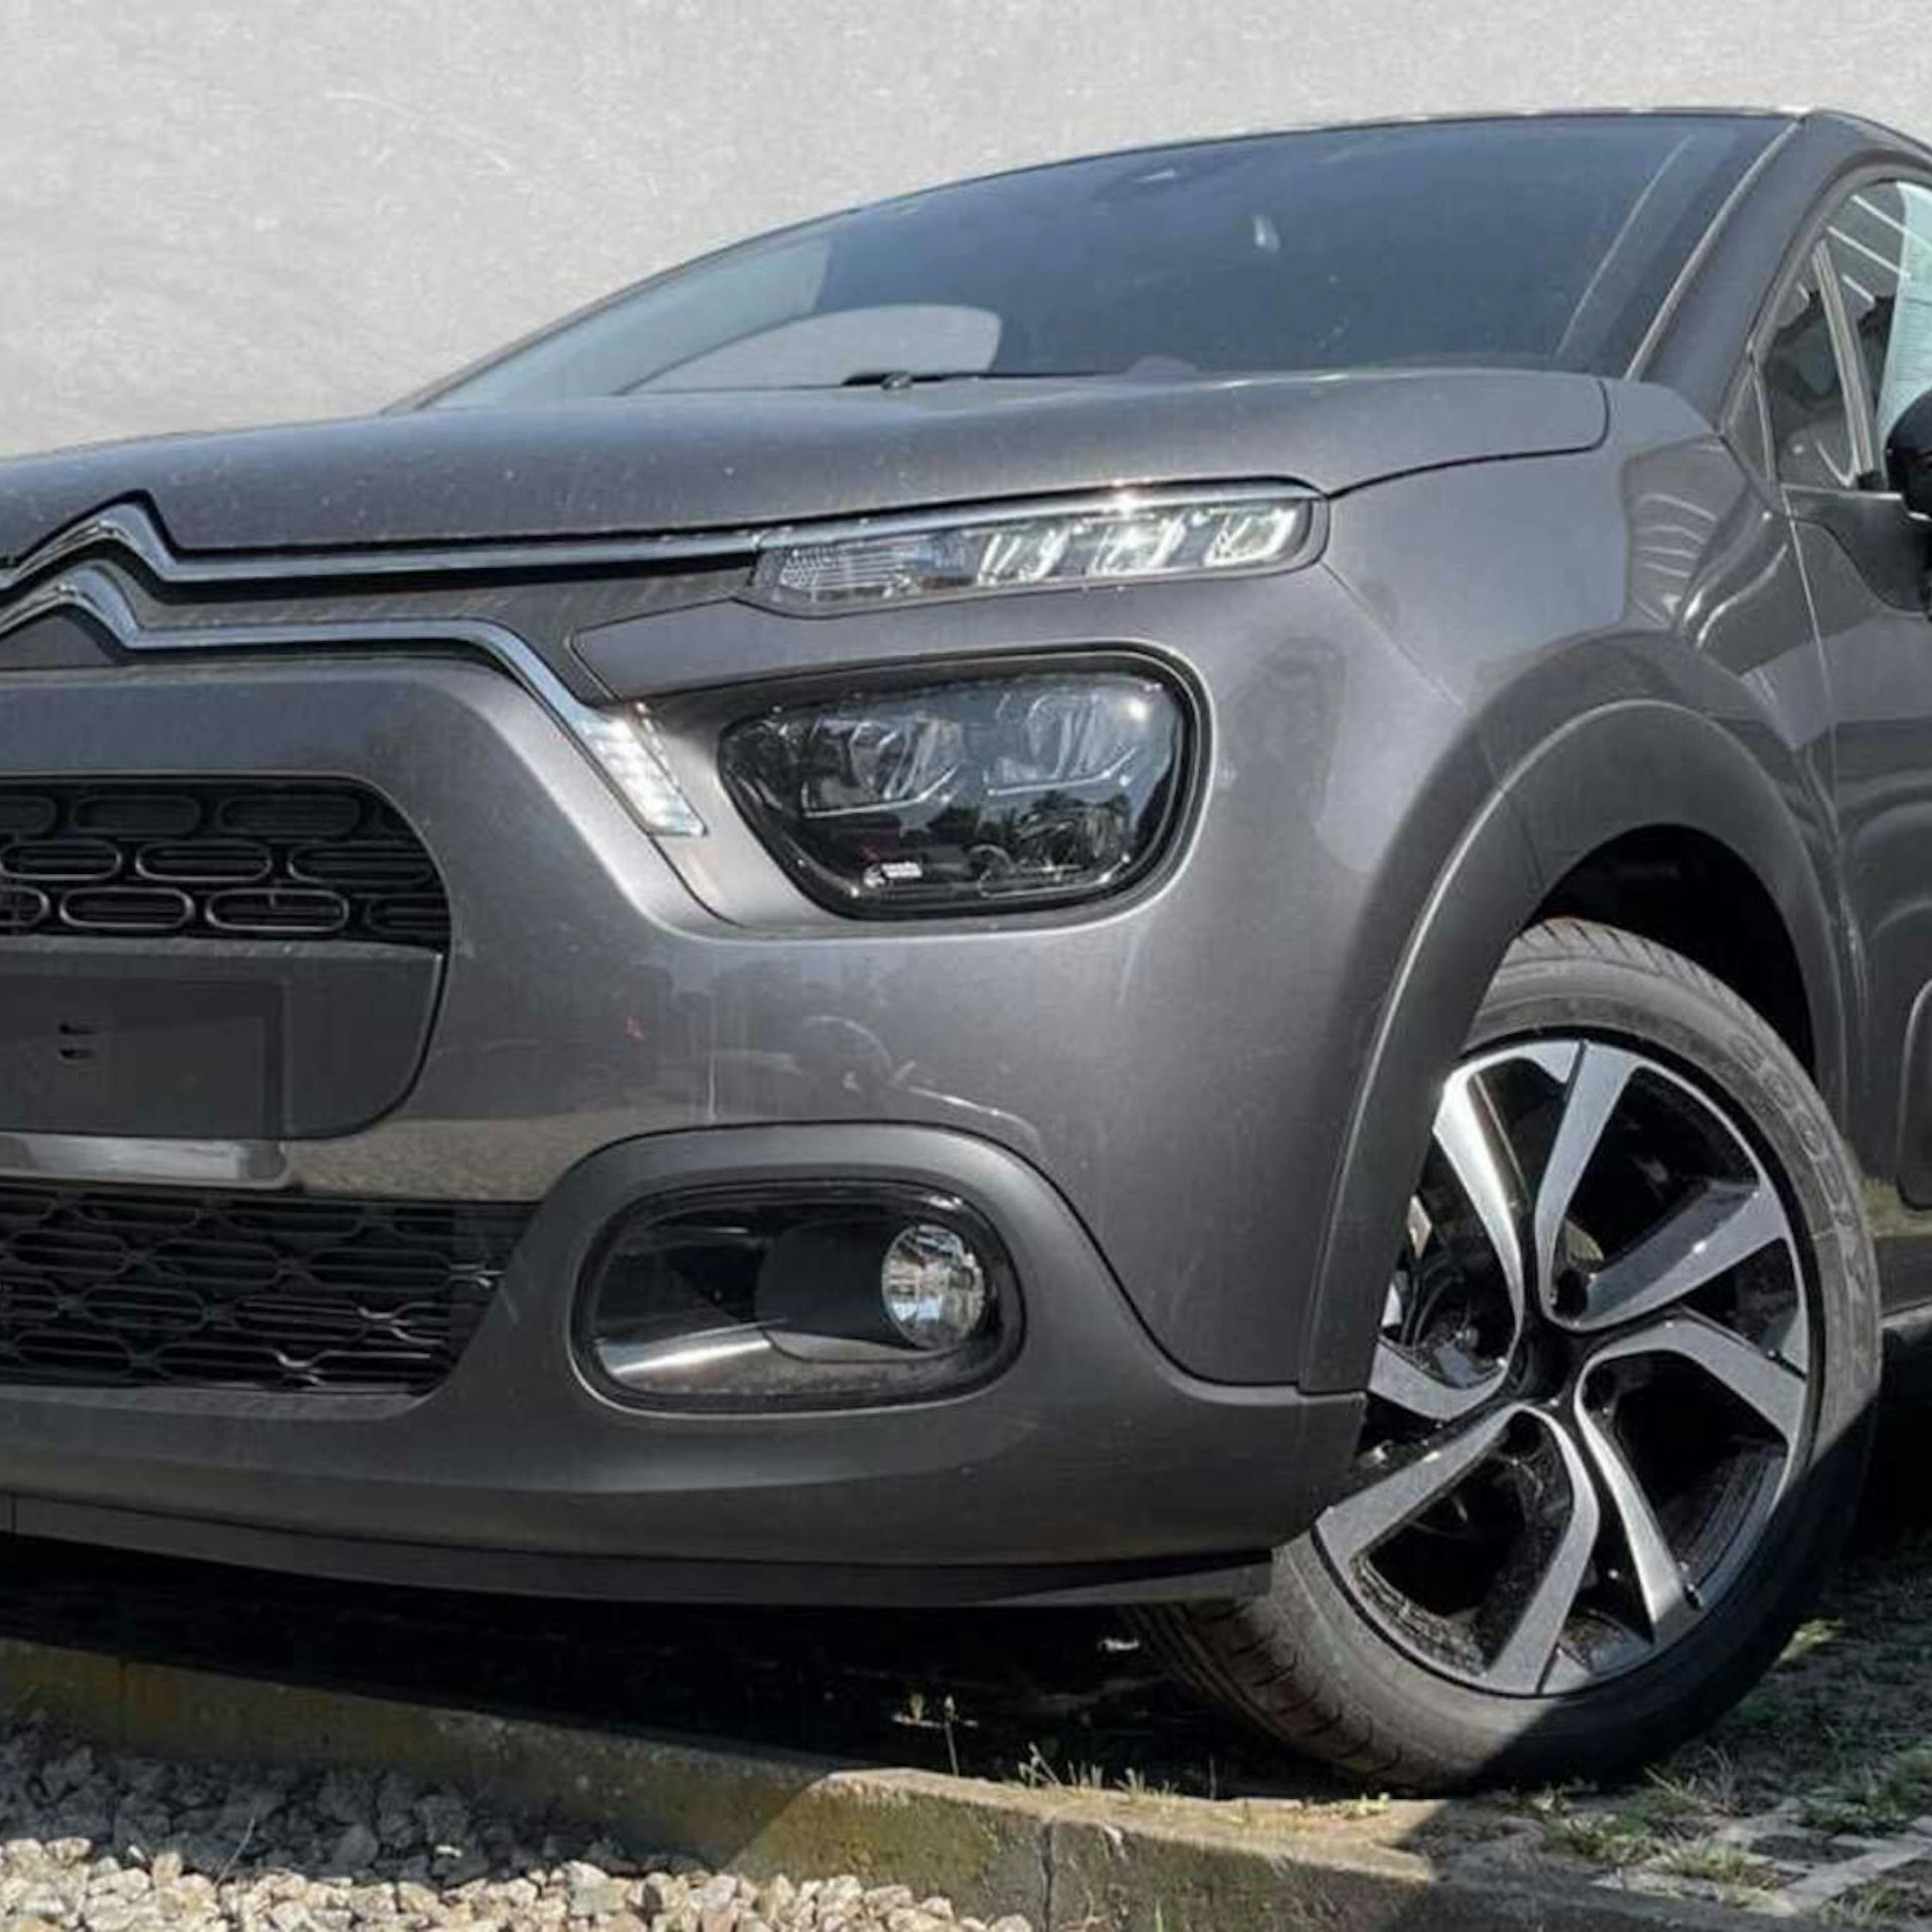 Ein grauer Citroën C3 steht vor einer grauen Wand.